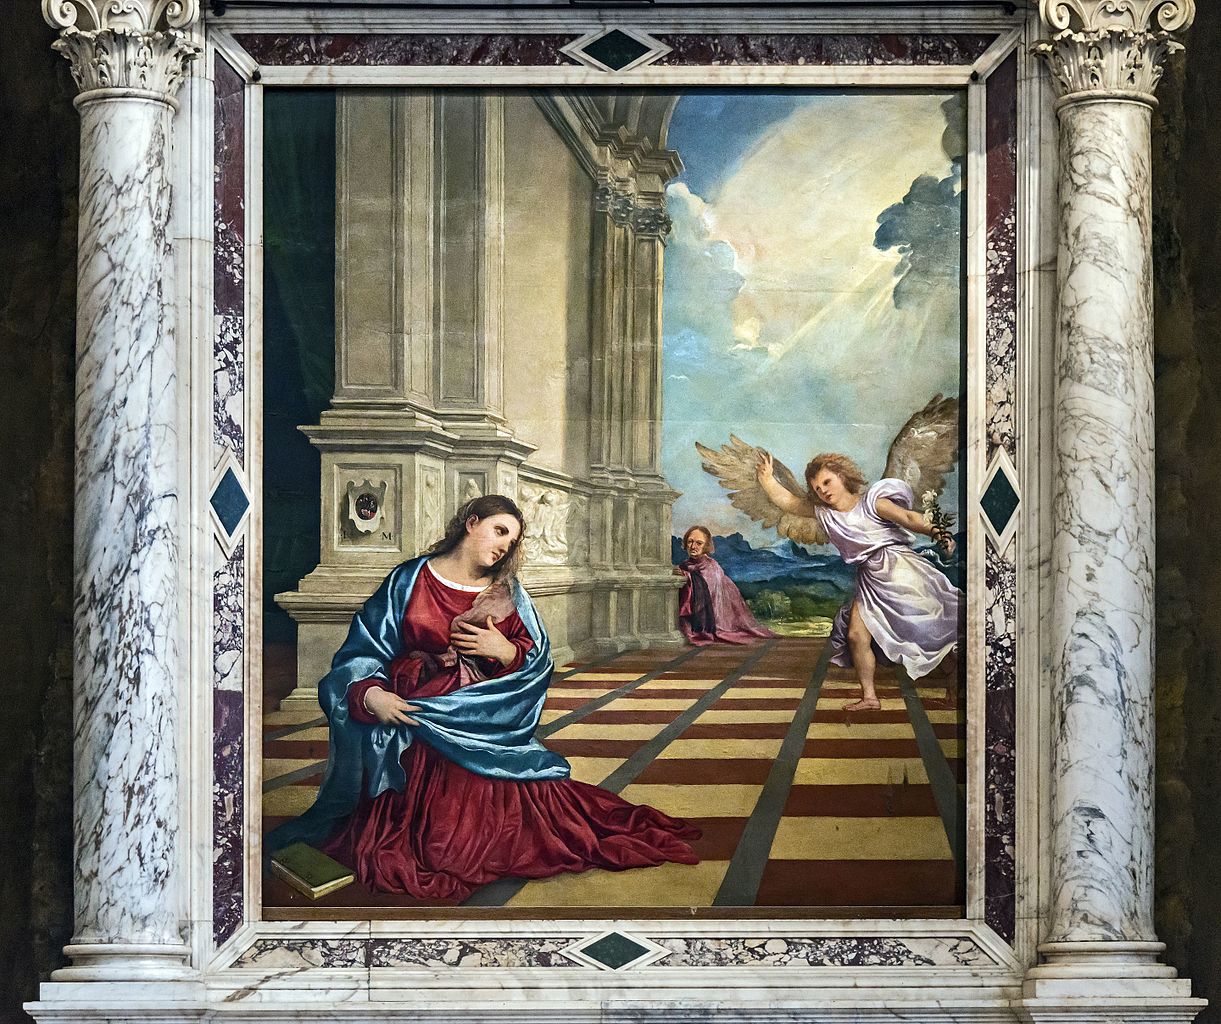 Tiziano Vecellio, Annunciazione (1520; olio su tavola, 210 x 176 cm; Treviso, Duomo, Cappella Malchiostro)
